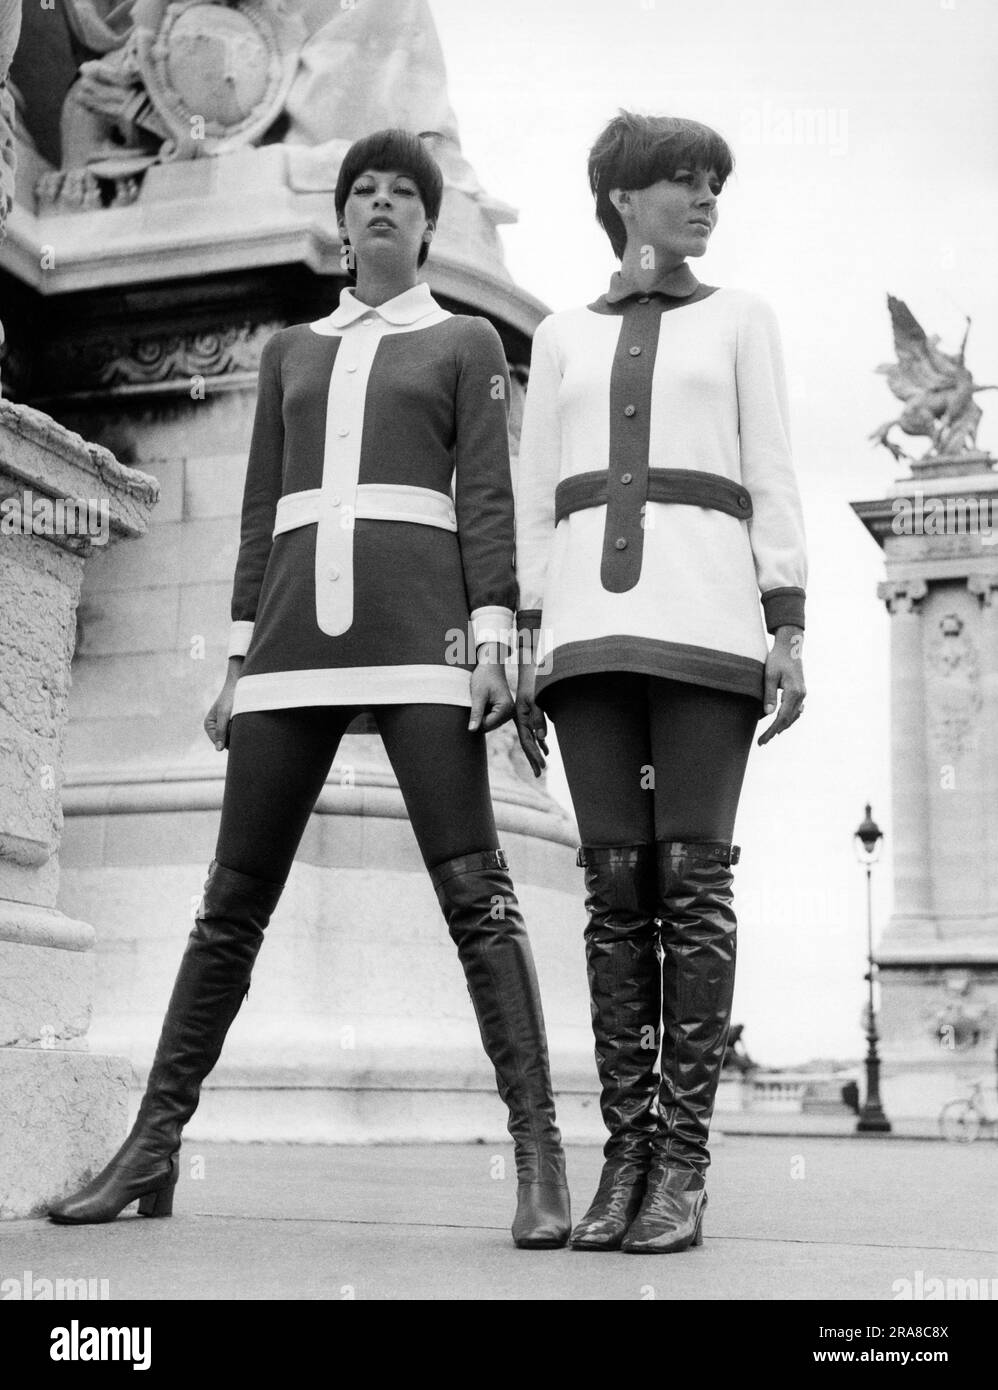 Vereinigte Staaten: 1969 zwei Frauen modellieren gegenläufige Outfits und hoch geschnittene Stiefel. Stockfoto